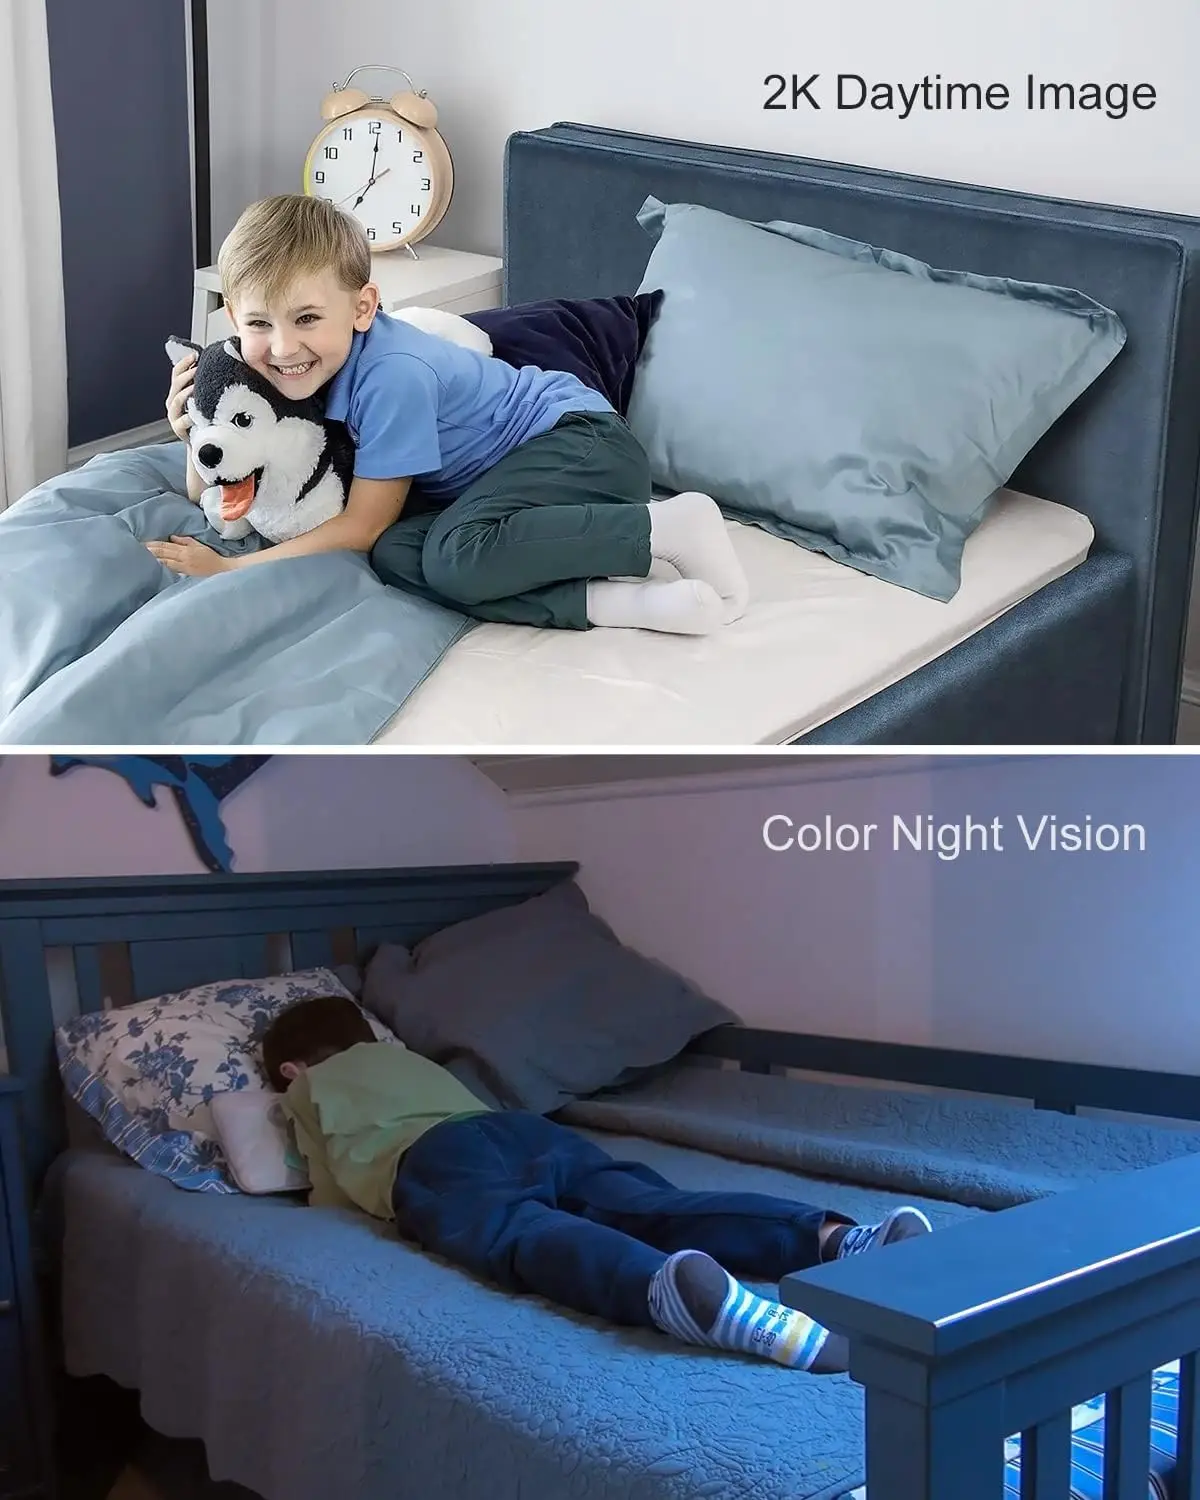 Безжична камера Einnov 2K Security WiFi Pan & Tilt за дома, дете/домашен любимец, 2.4 Ghz, Автоматично проследяване, Детекция на движение, Цвят на нощ2